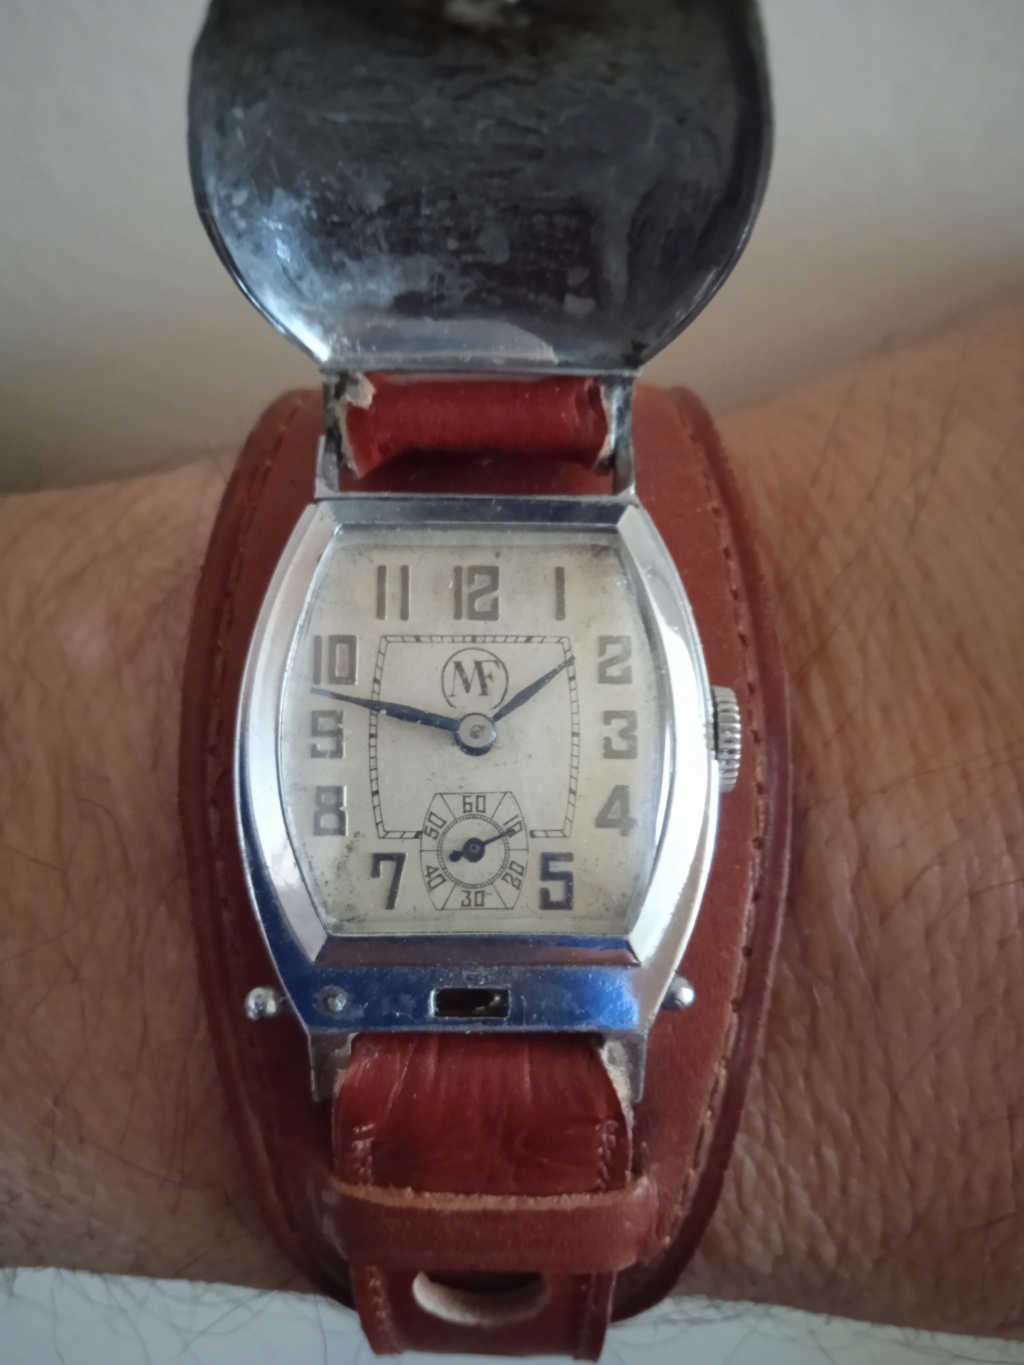 Les montres mécaniques les plus basiques, heure, minute, seconde ne seraient-elles pas les plus désirables par leur sobriété? Img_2309